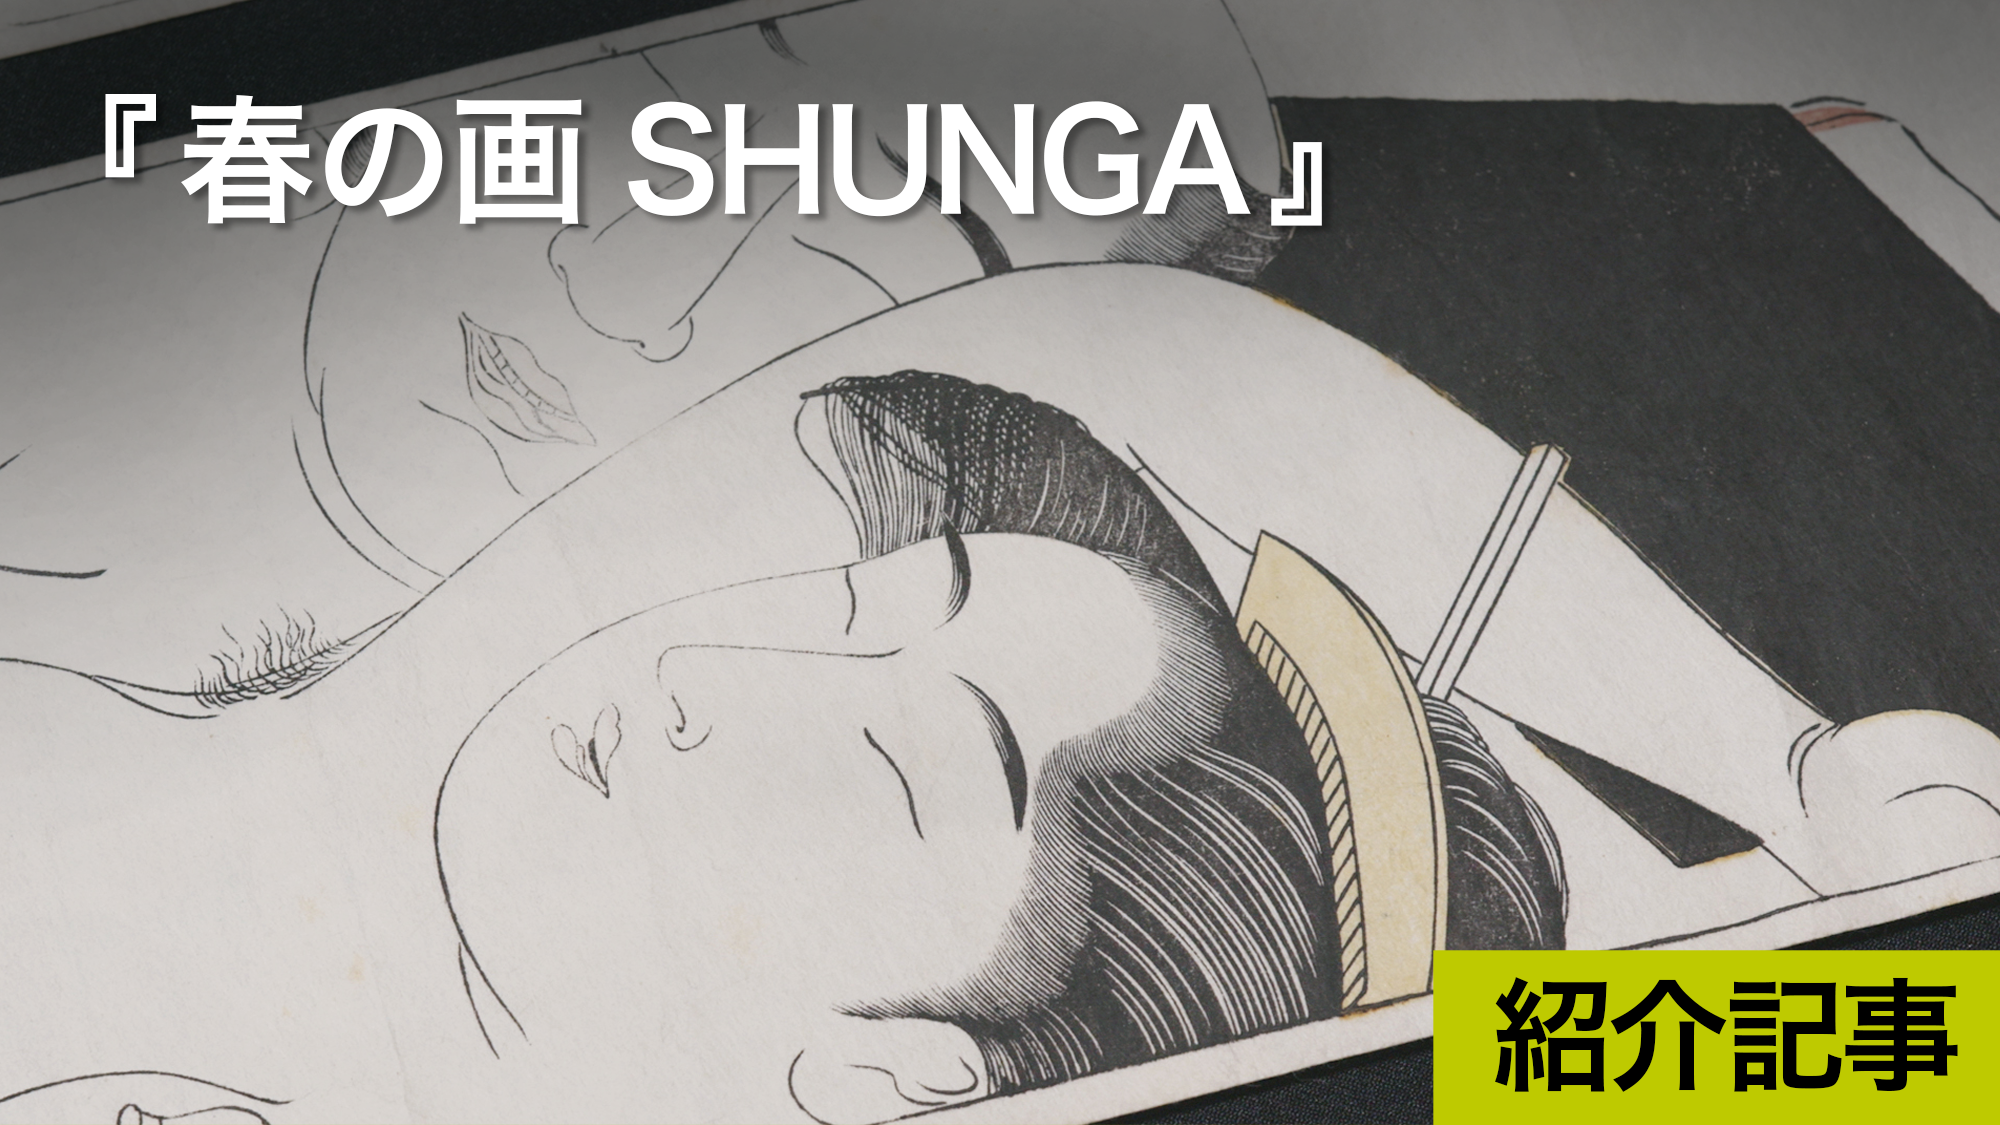 『春の画 SHUNGA』100点以上の春画が見事に無修正で上映、春画の多様性を知る